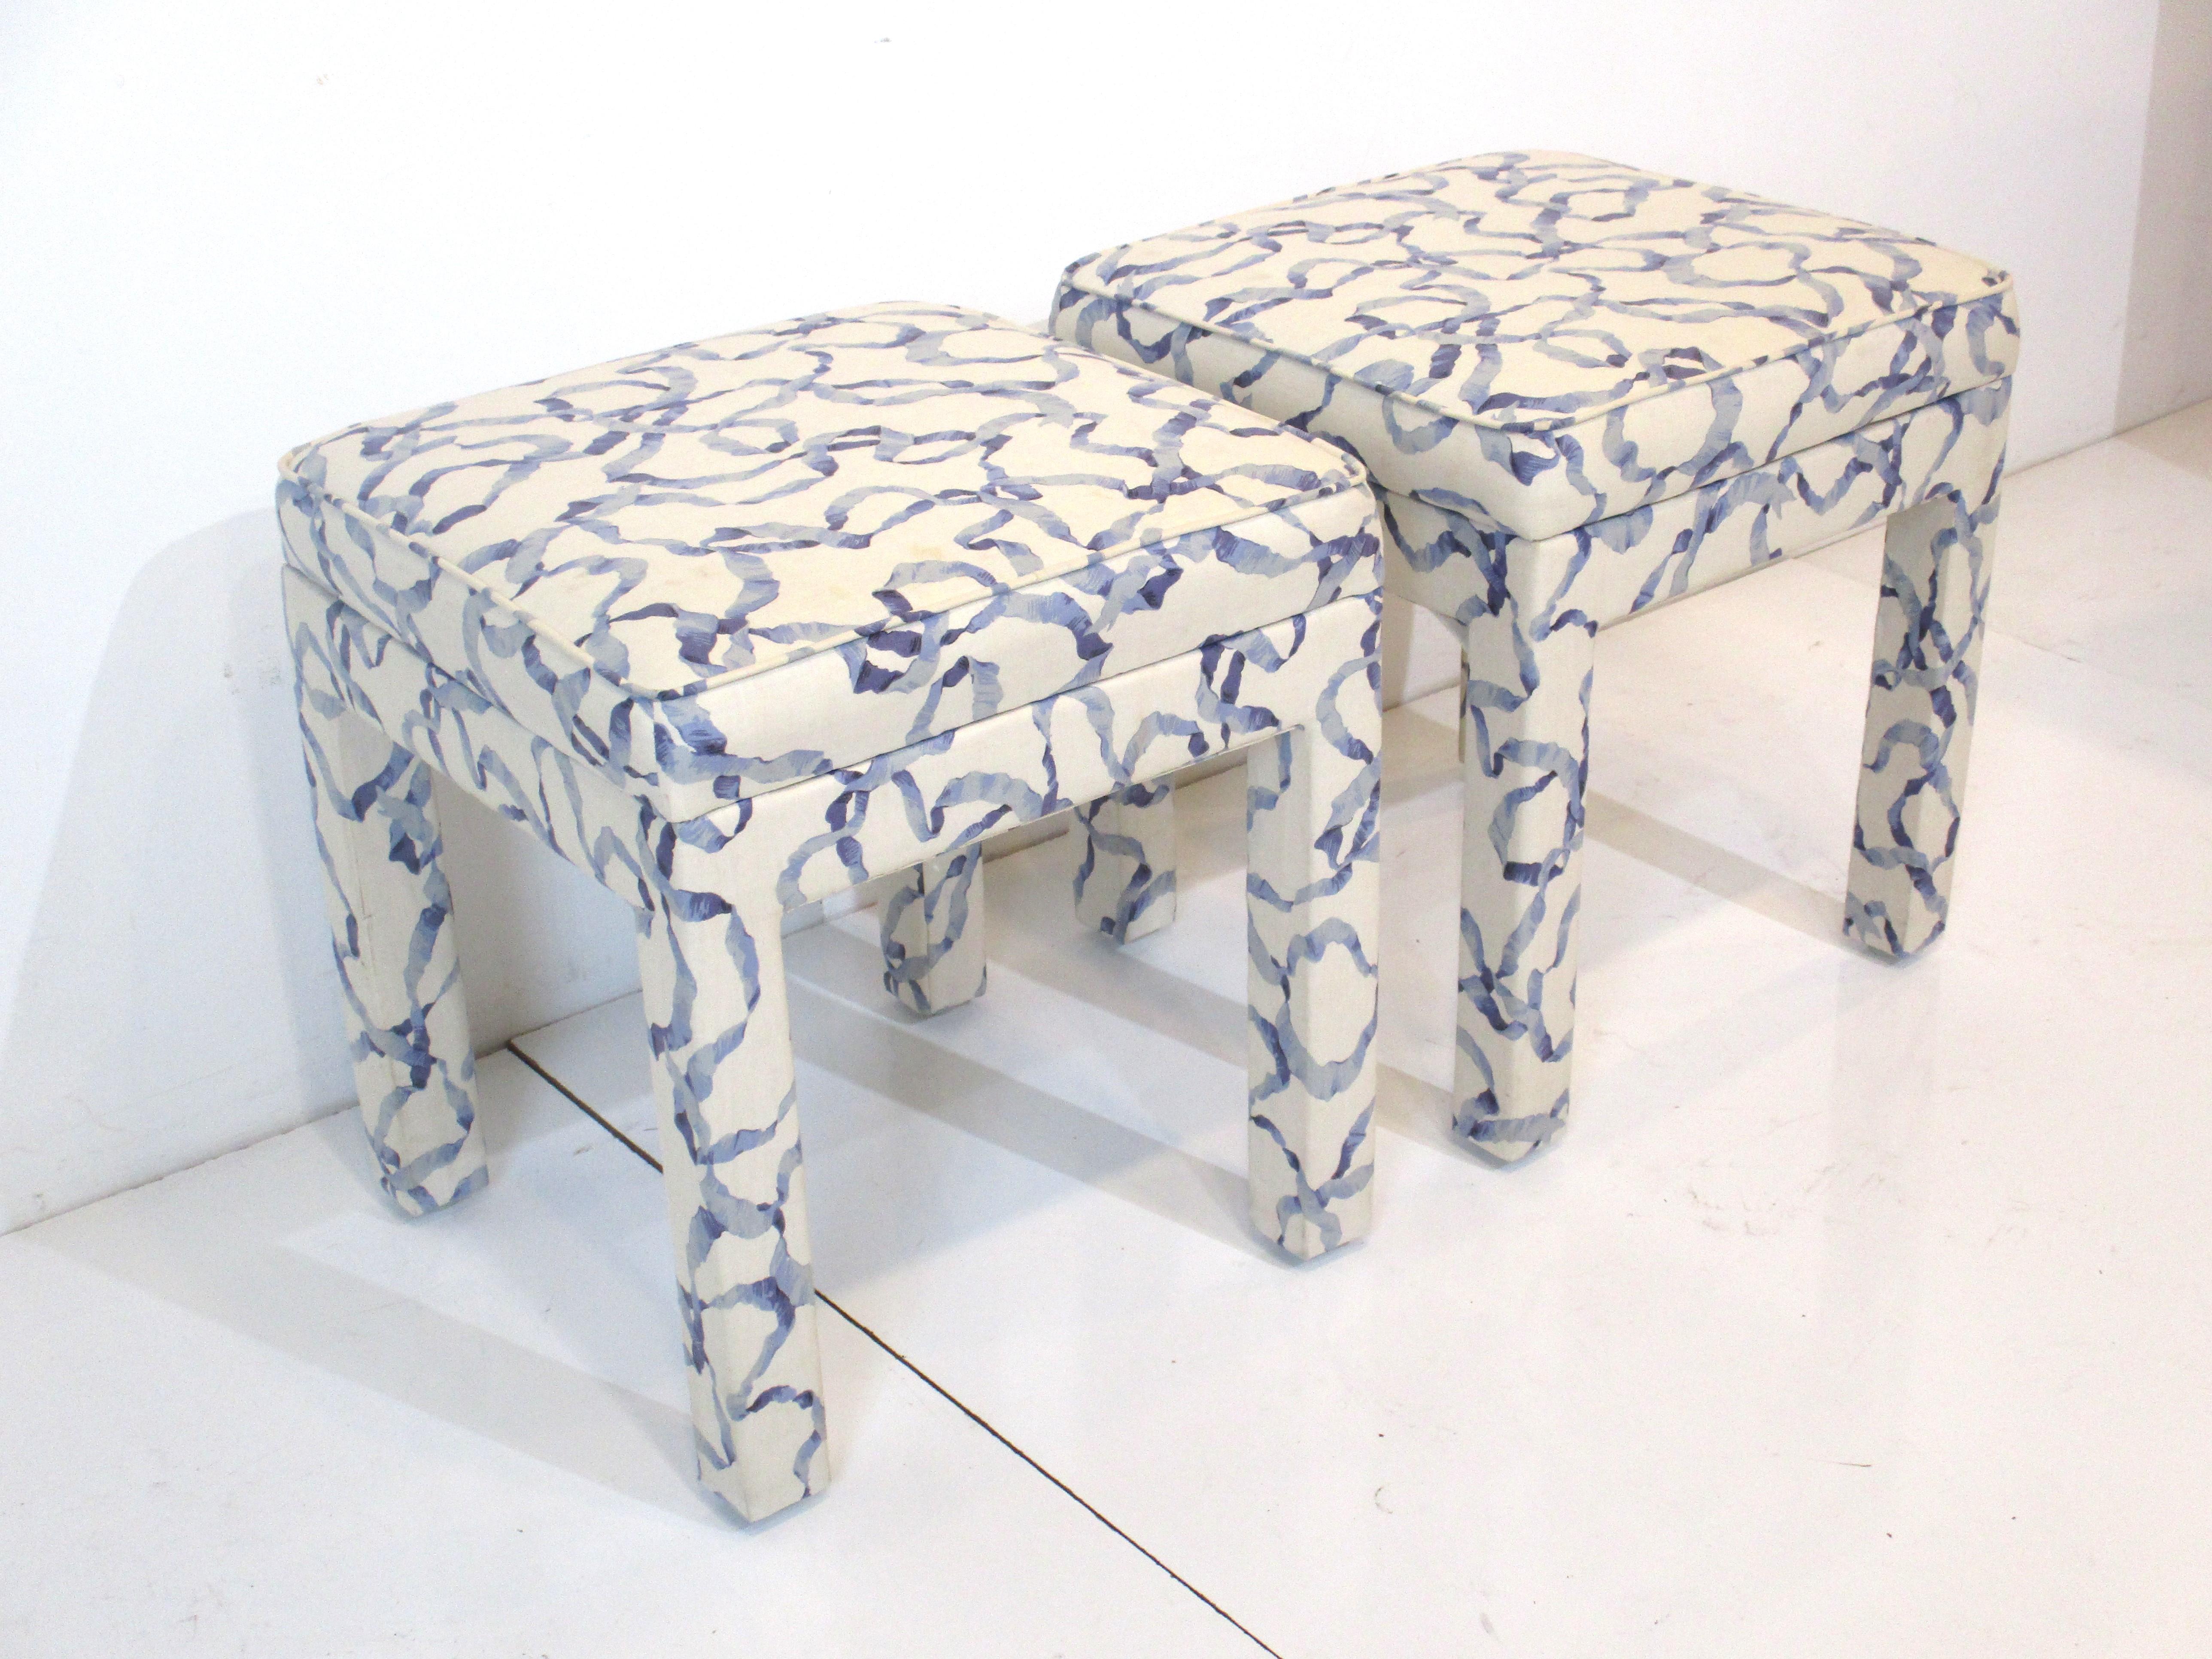 Ein Paar schön große gepolsterte Hocker in einem blauen und cremefarbenen Stoff, perfekt für zusätzliche Sitzgelegenheiten oder unter einem Konsolentisch. Hergestellt nach dem Vorbild der Firma Henredon Furniture.